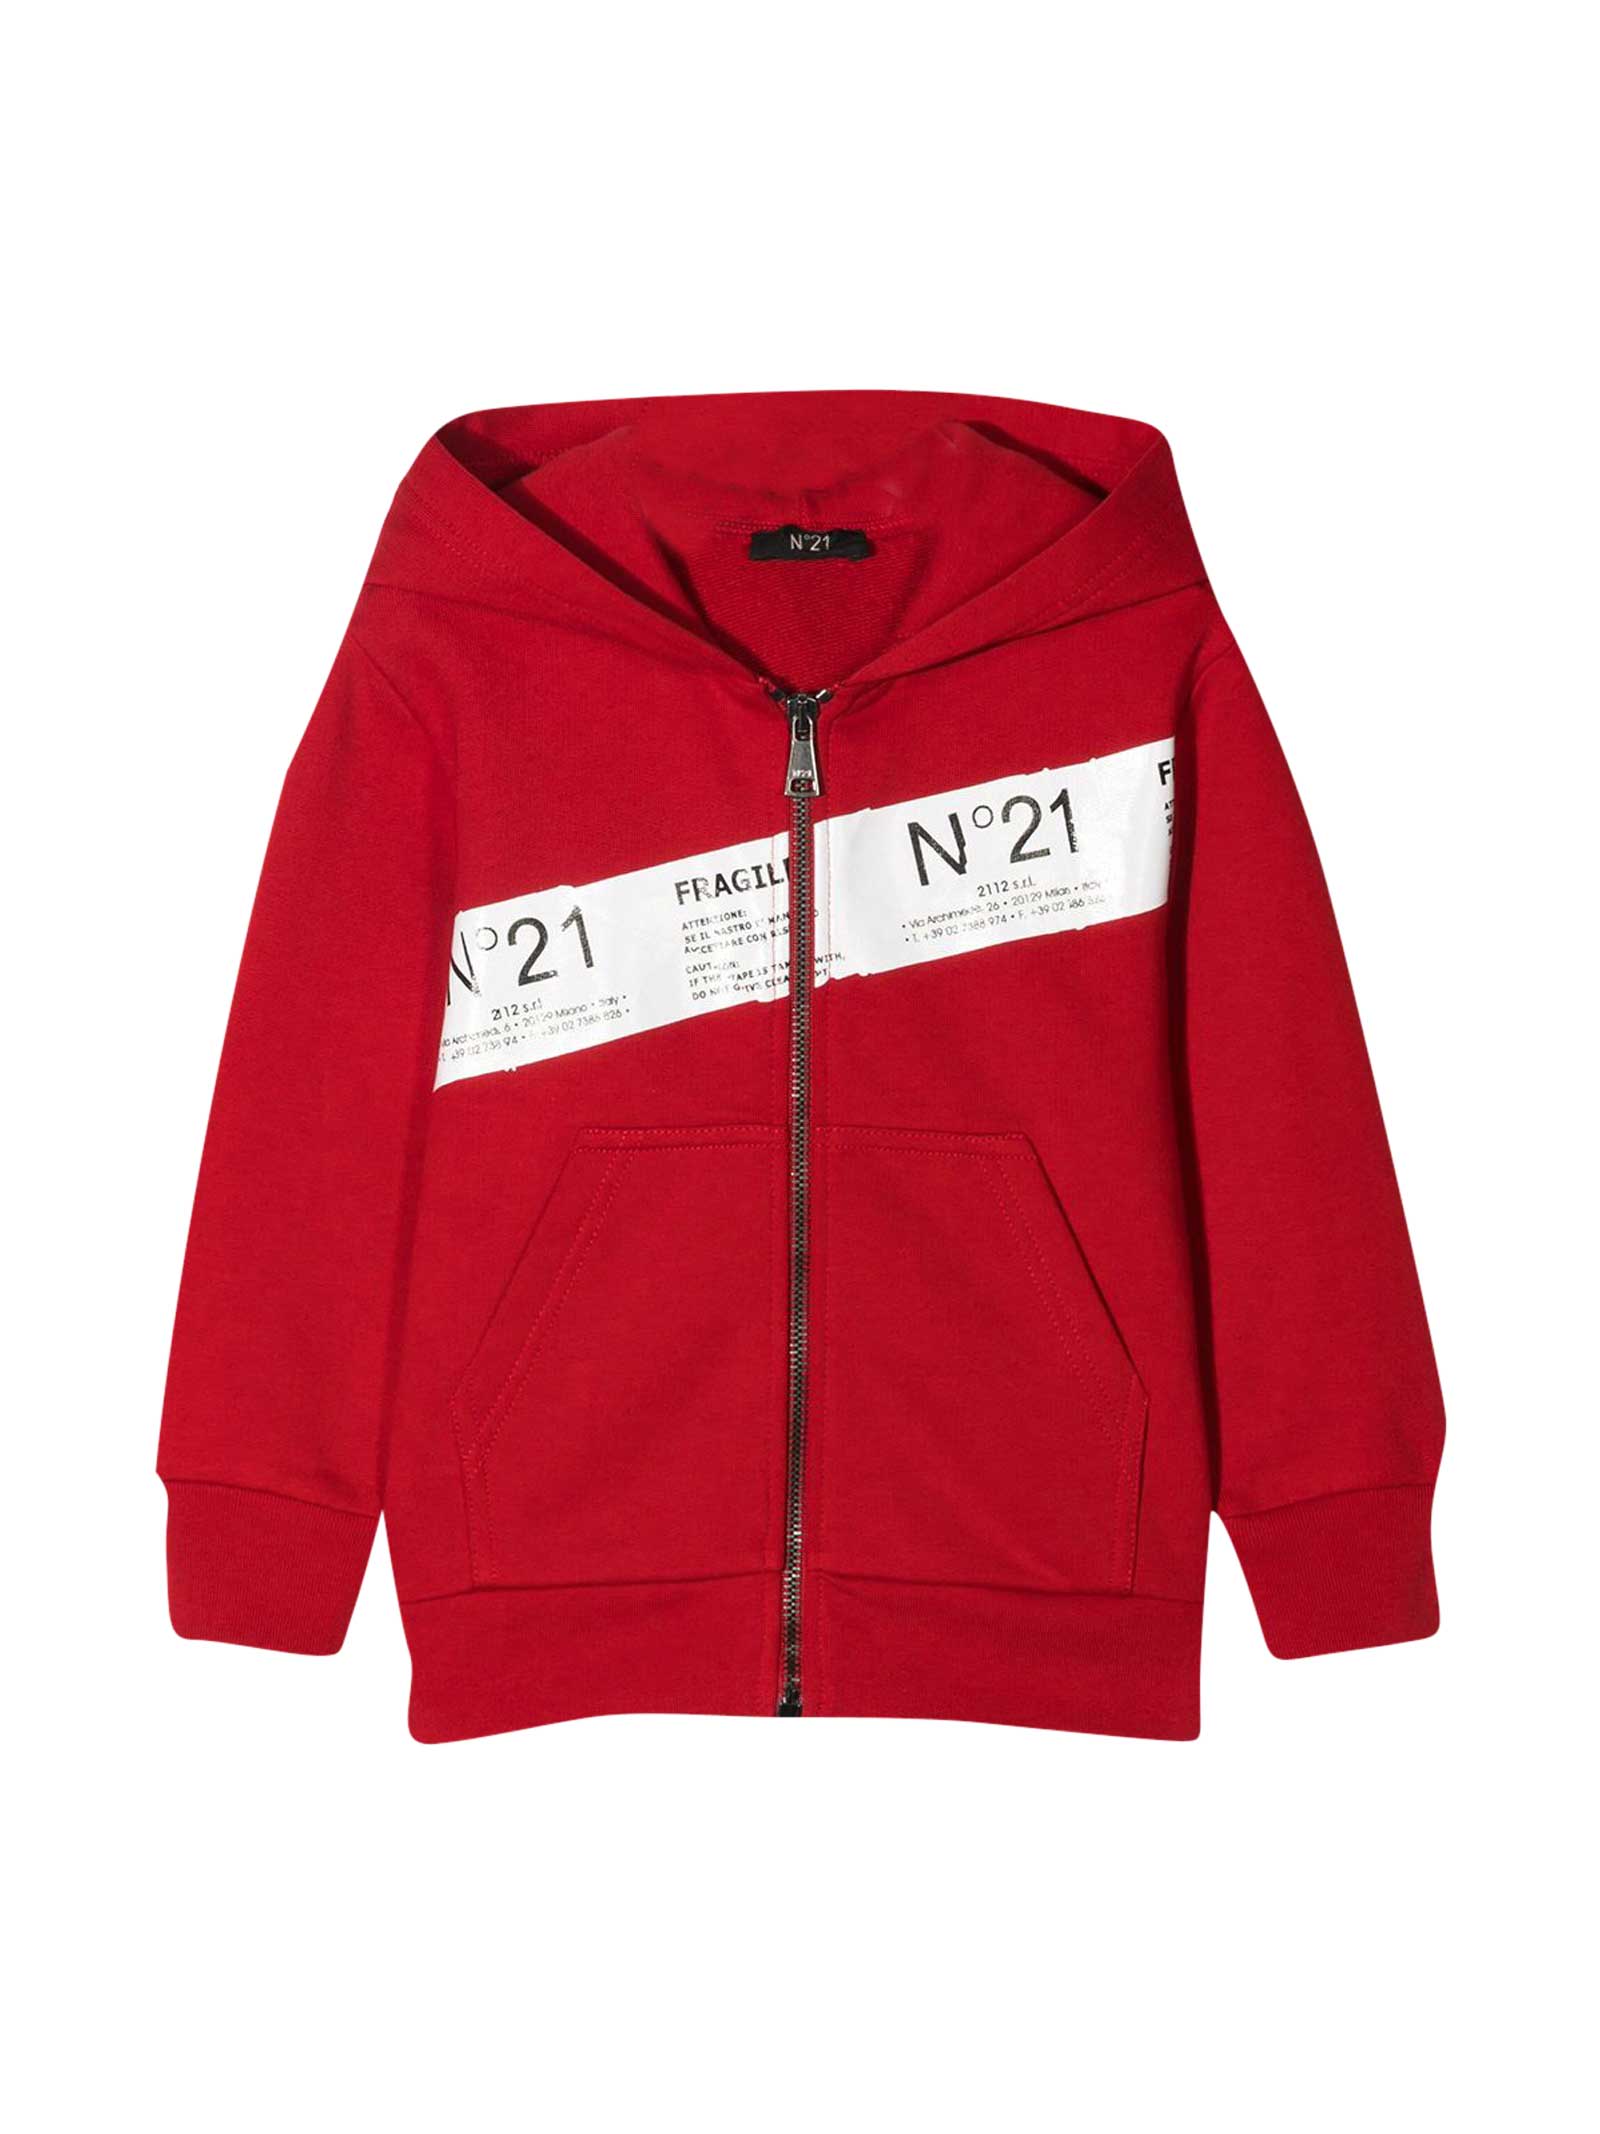 N.21 Red Sweatshirt N ° 21 Kids